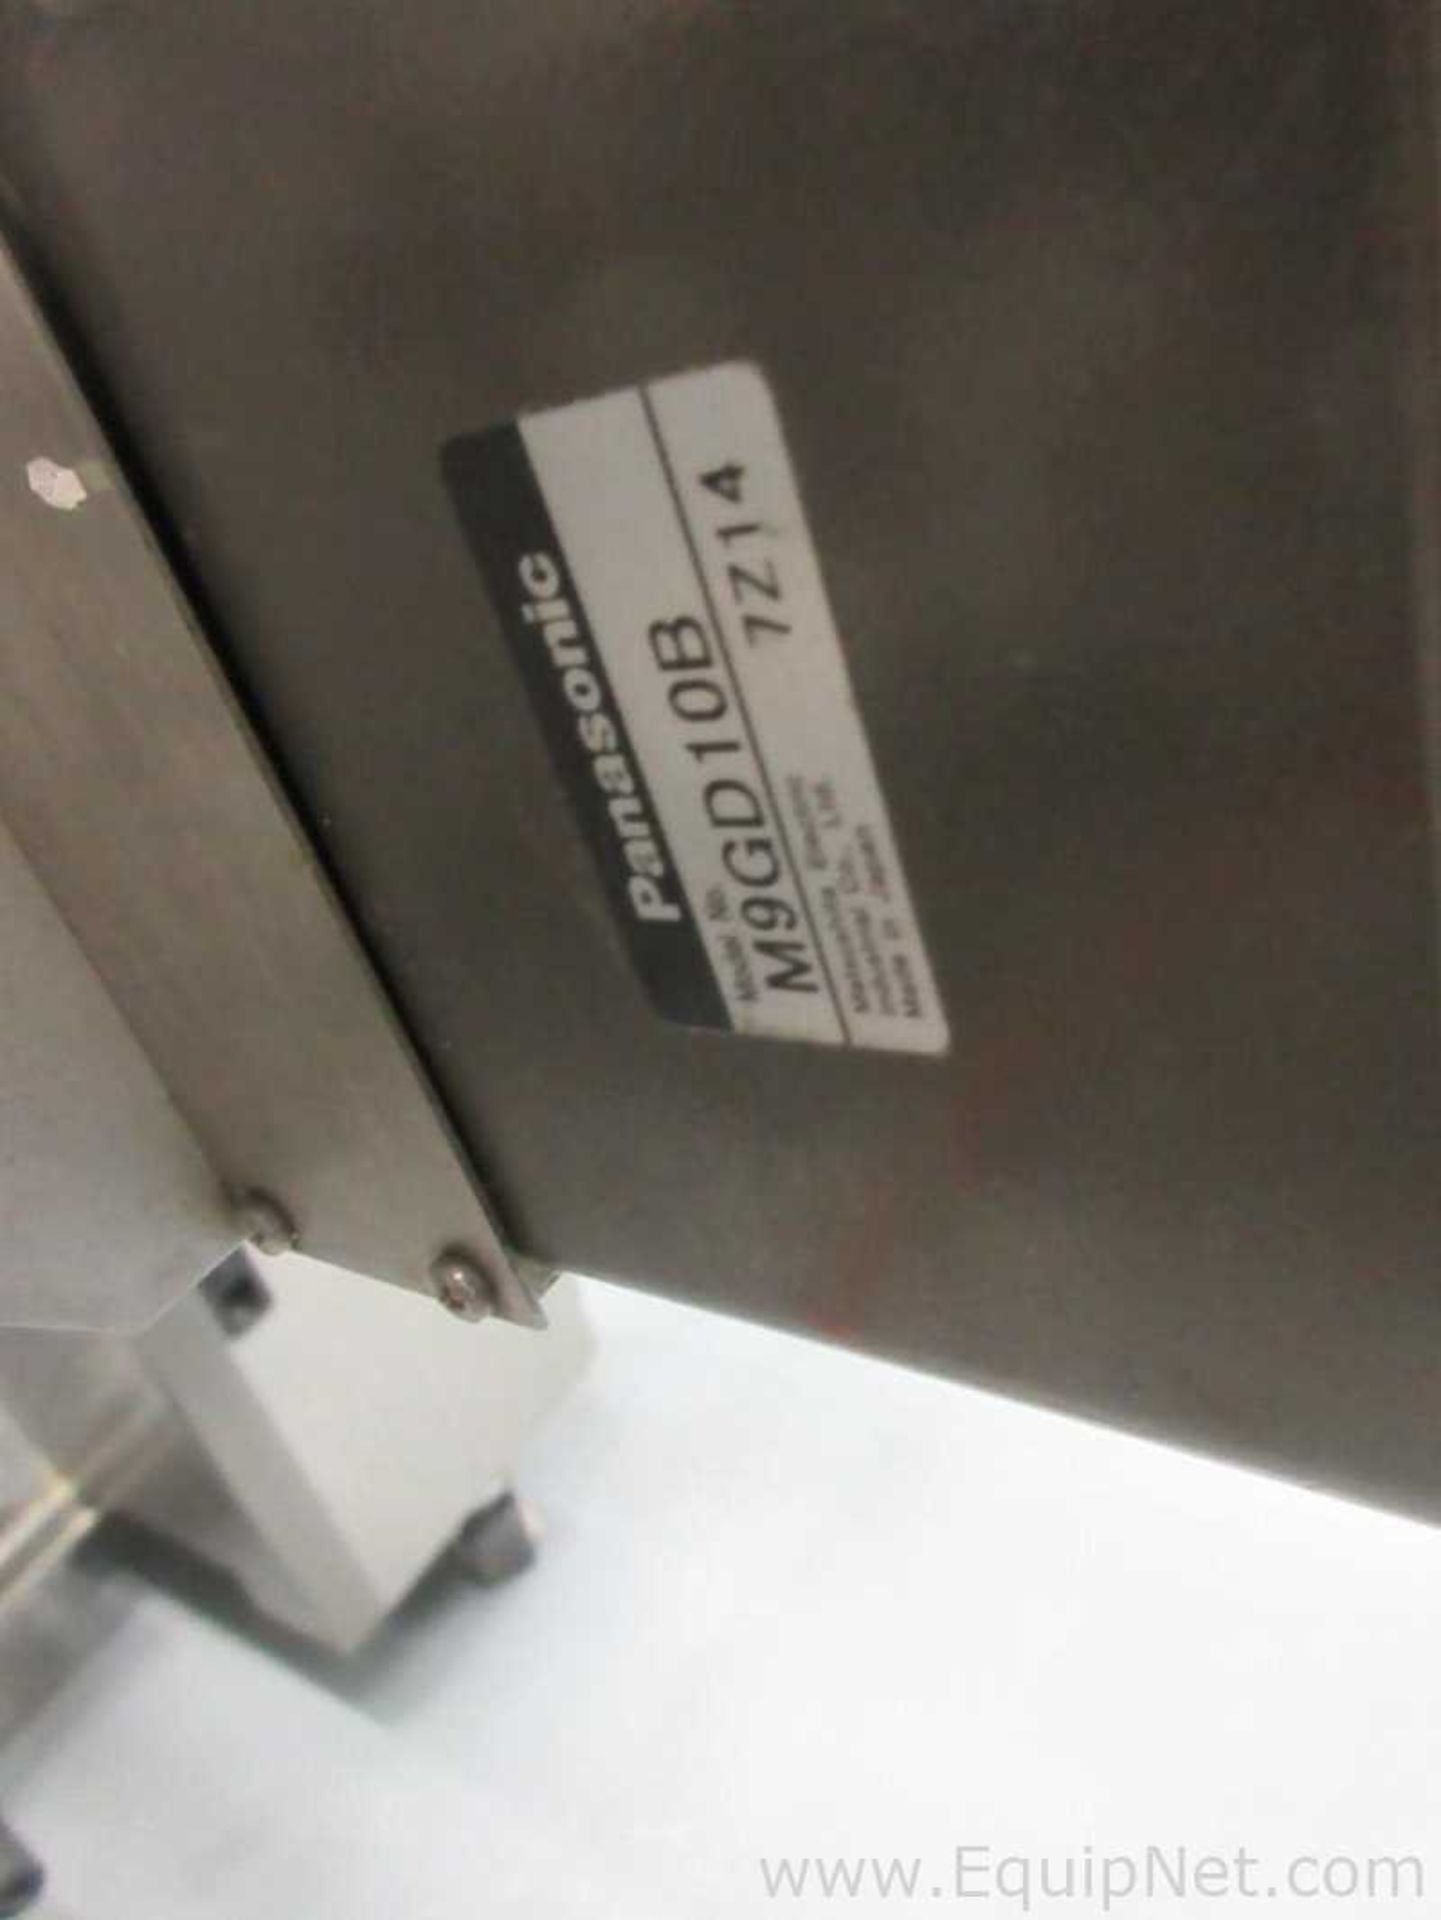 Pack Leader PRO-215D Labeler With Allen Hot Foil Printer - Image 13 of 16